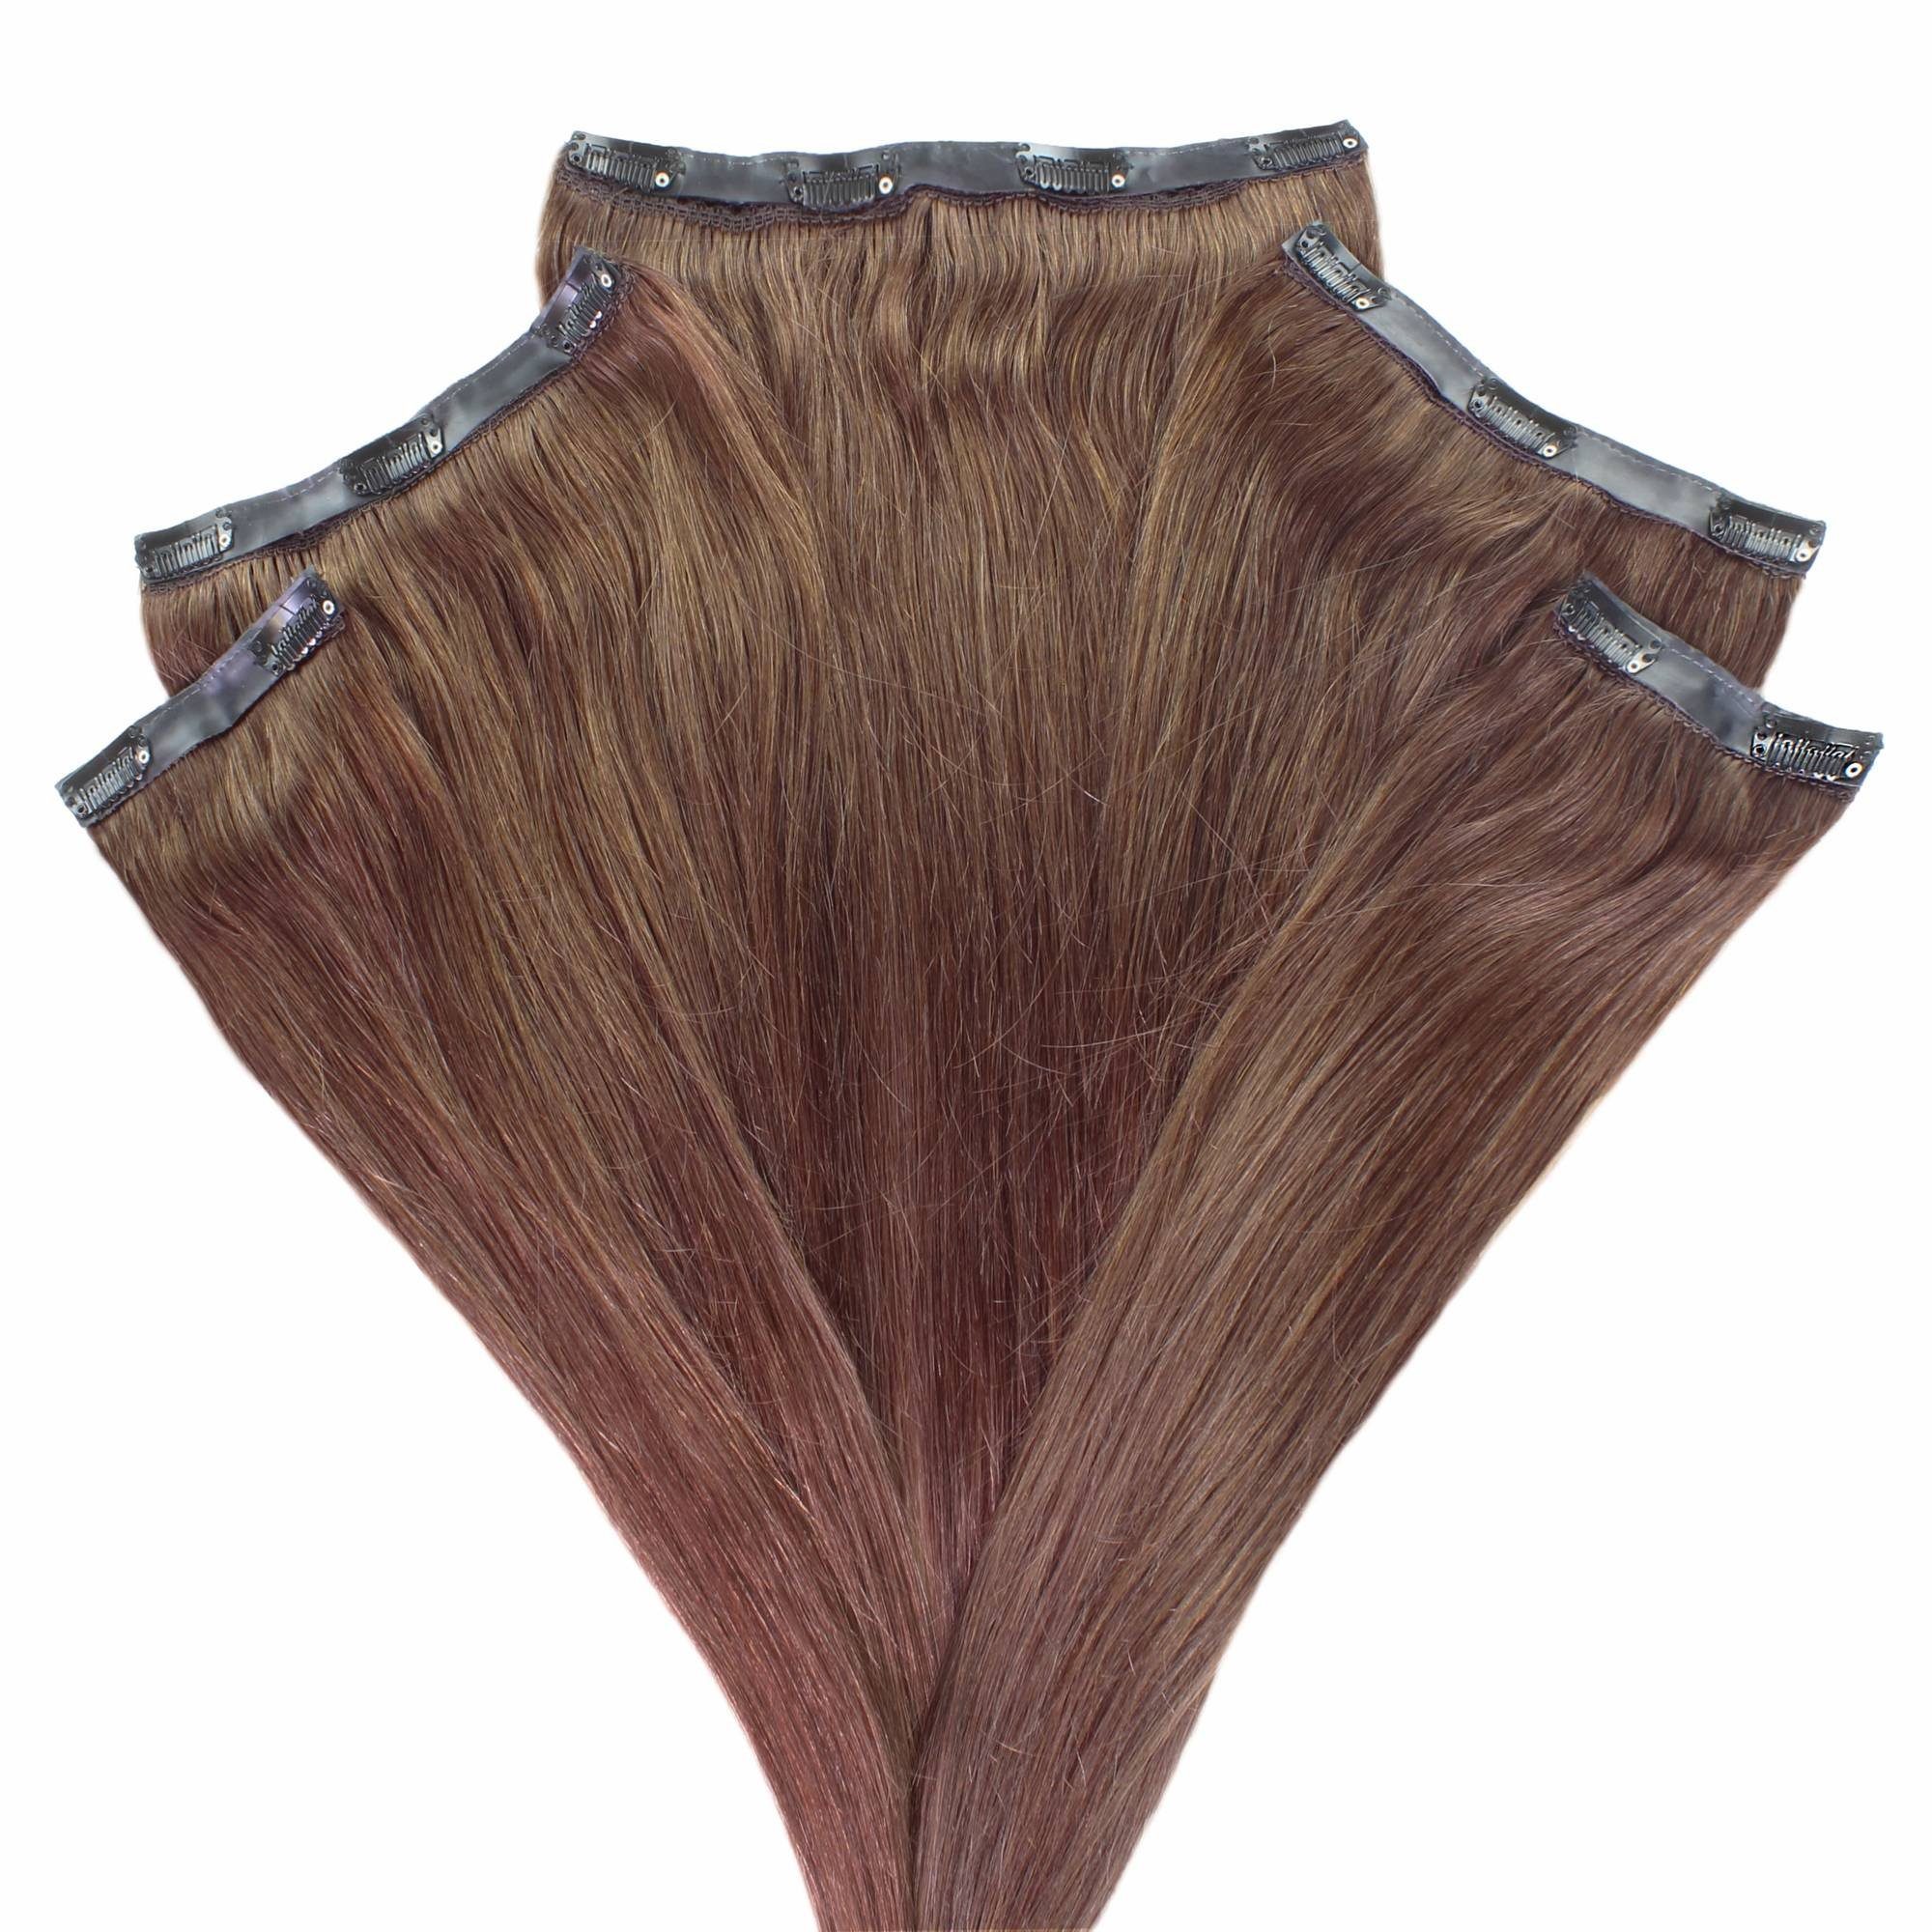 Braun-Intensiv Mittelbraun Extensions 30cm Volumen hair2heart Echthaar-Extension #4/77 Clip